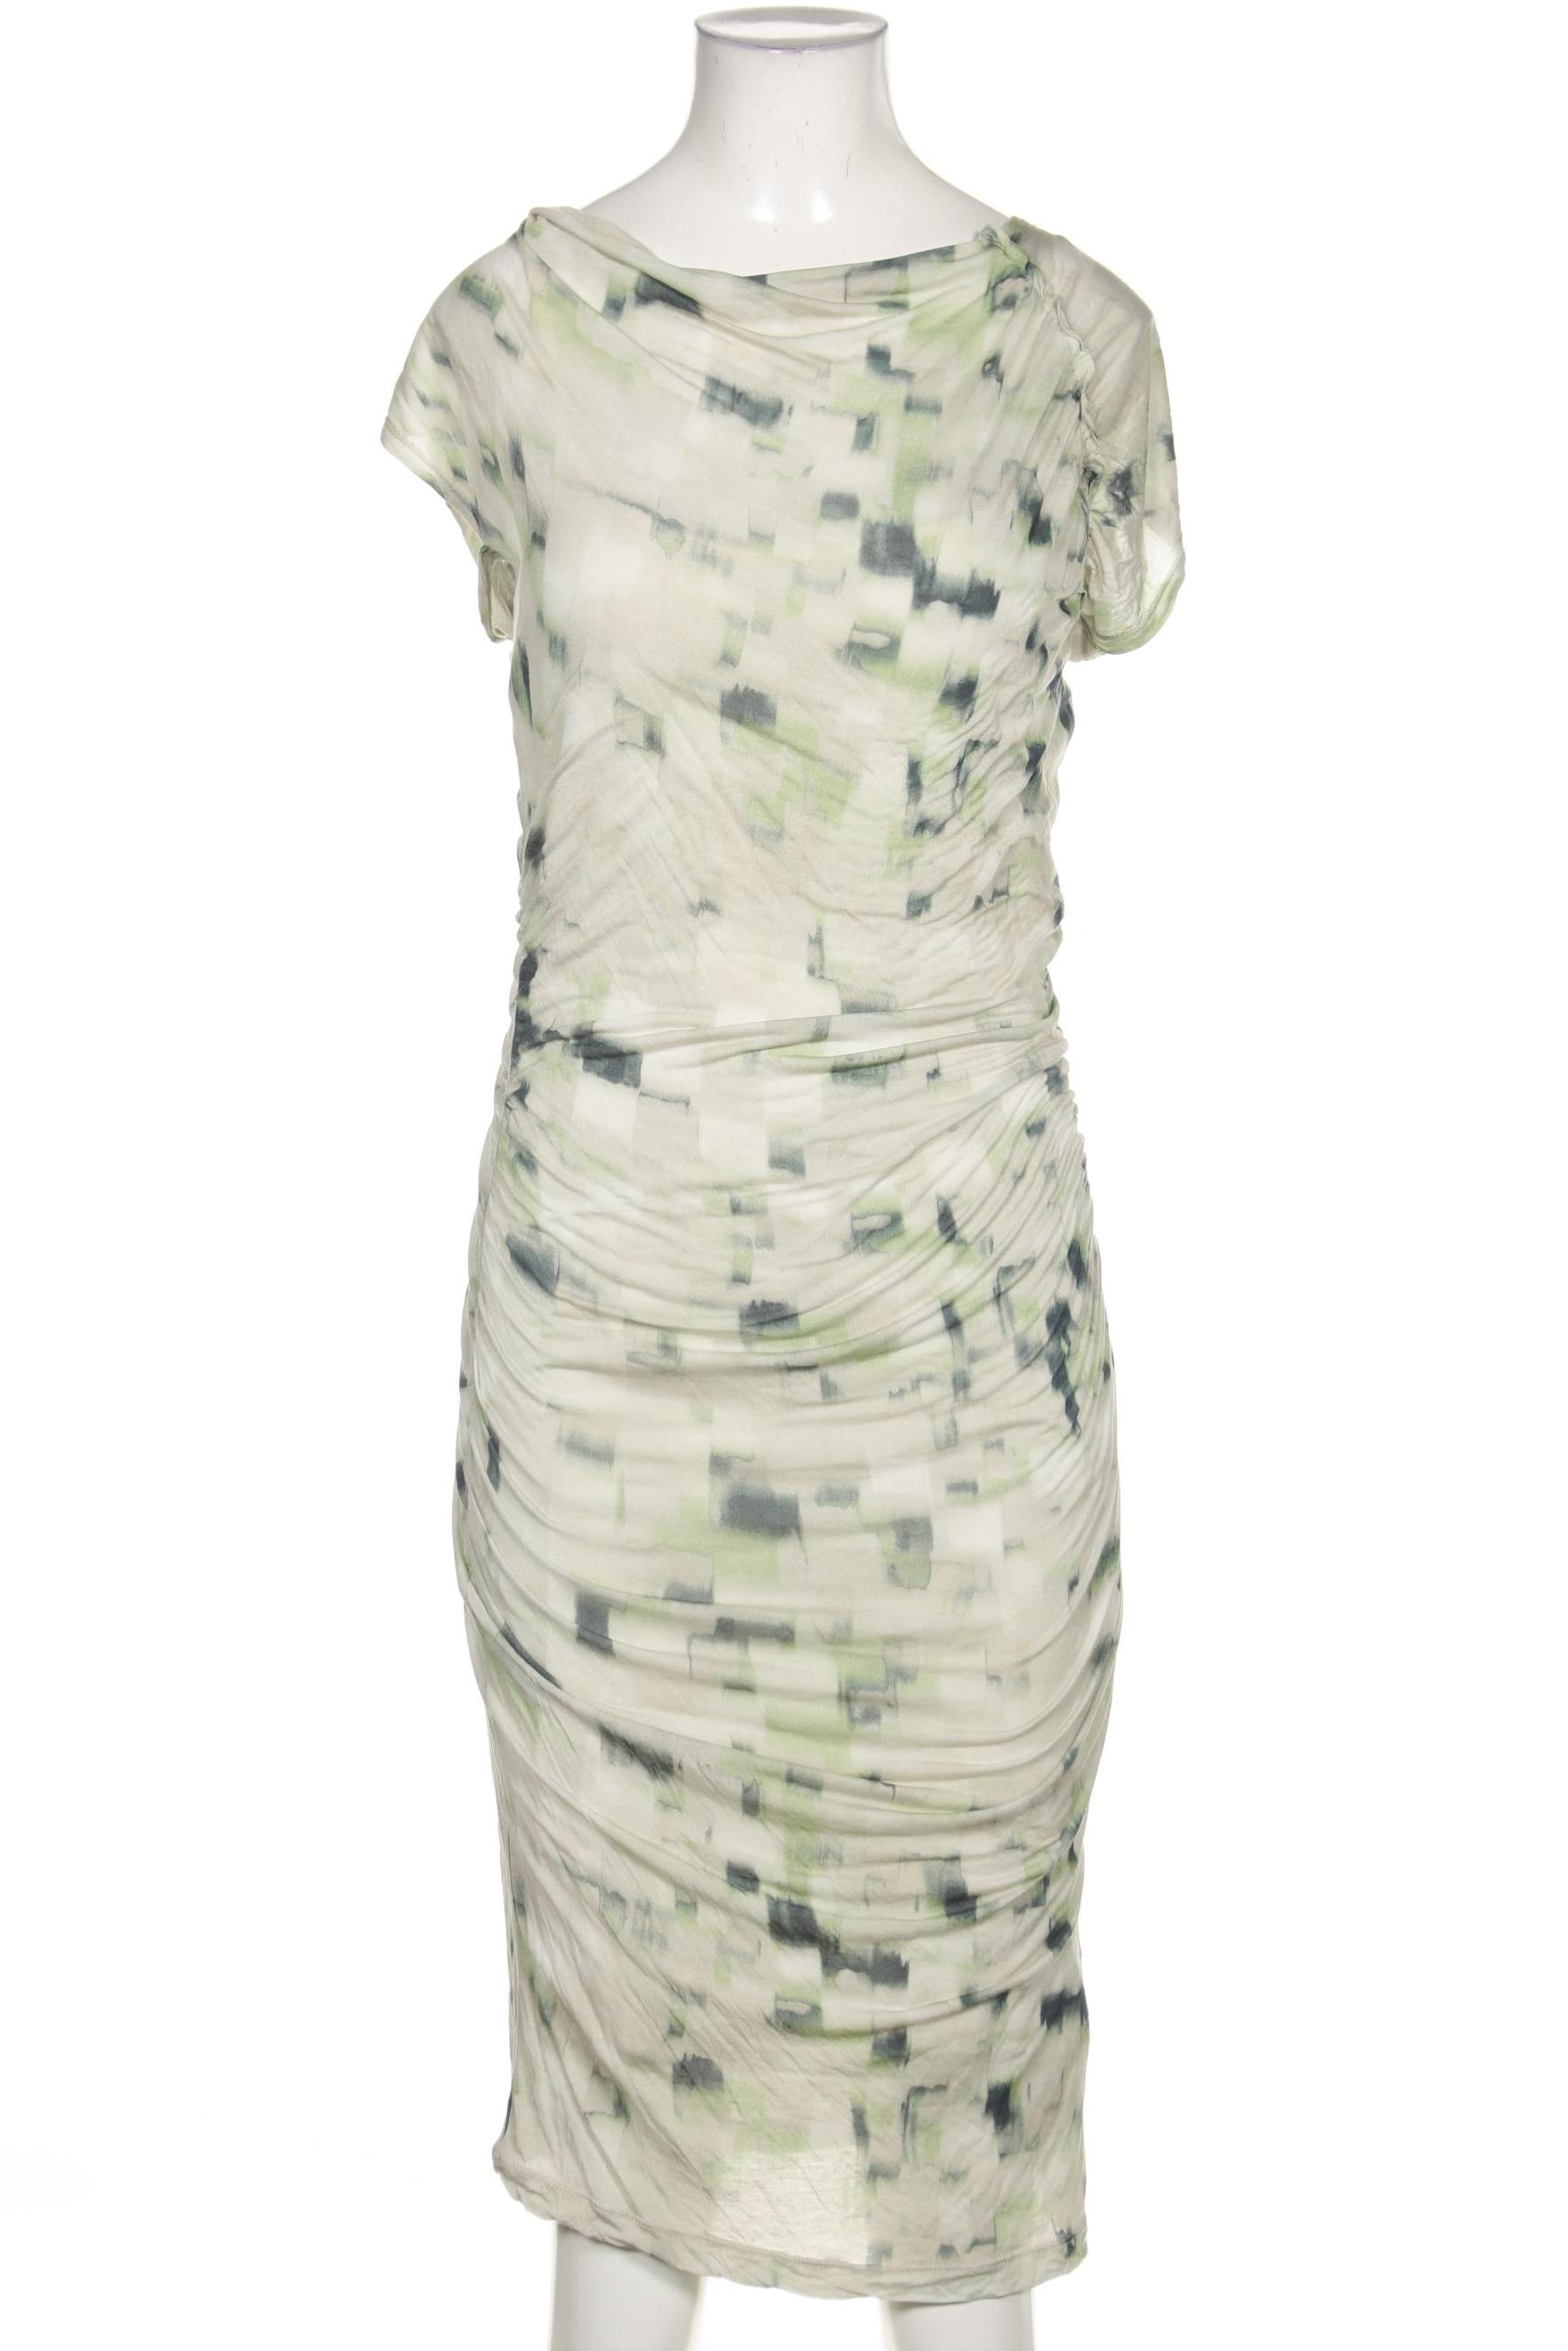 Rene Lezard Damen Kleid, grün von Rene Lezard